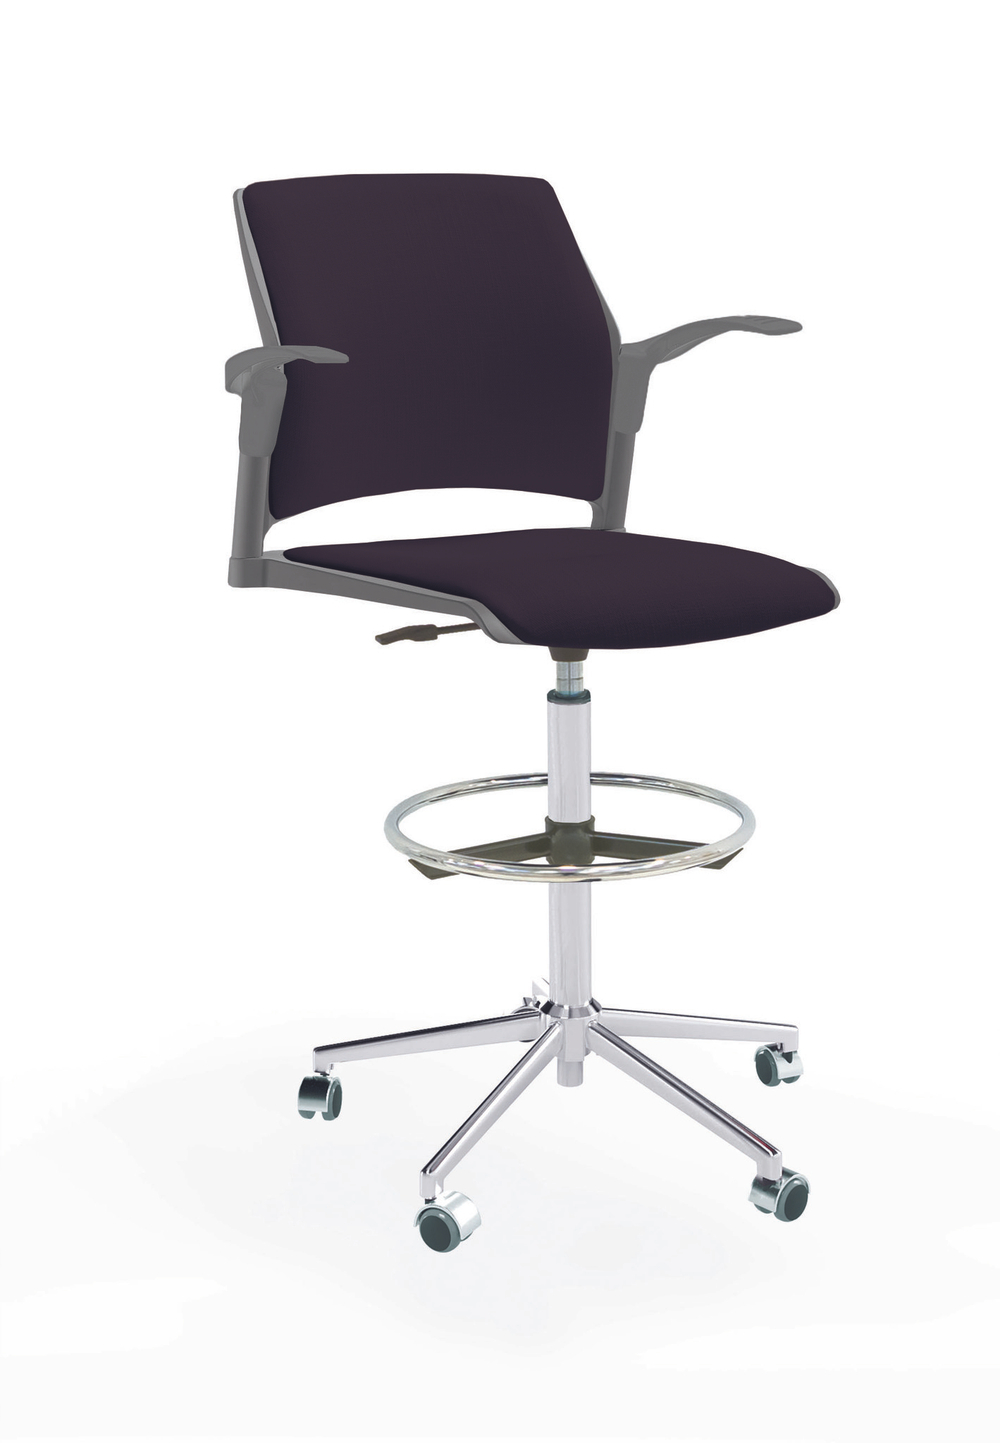 Кресло Rewind каркас хром, пластик серый, база стальная хромированная, с открытыми подлокотниками, сиденье и спинка черные